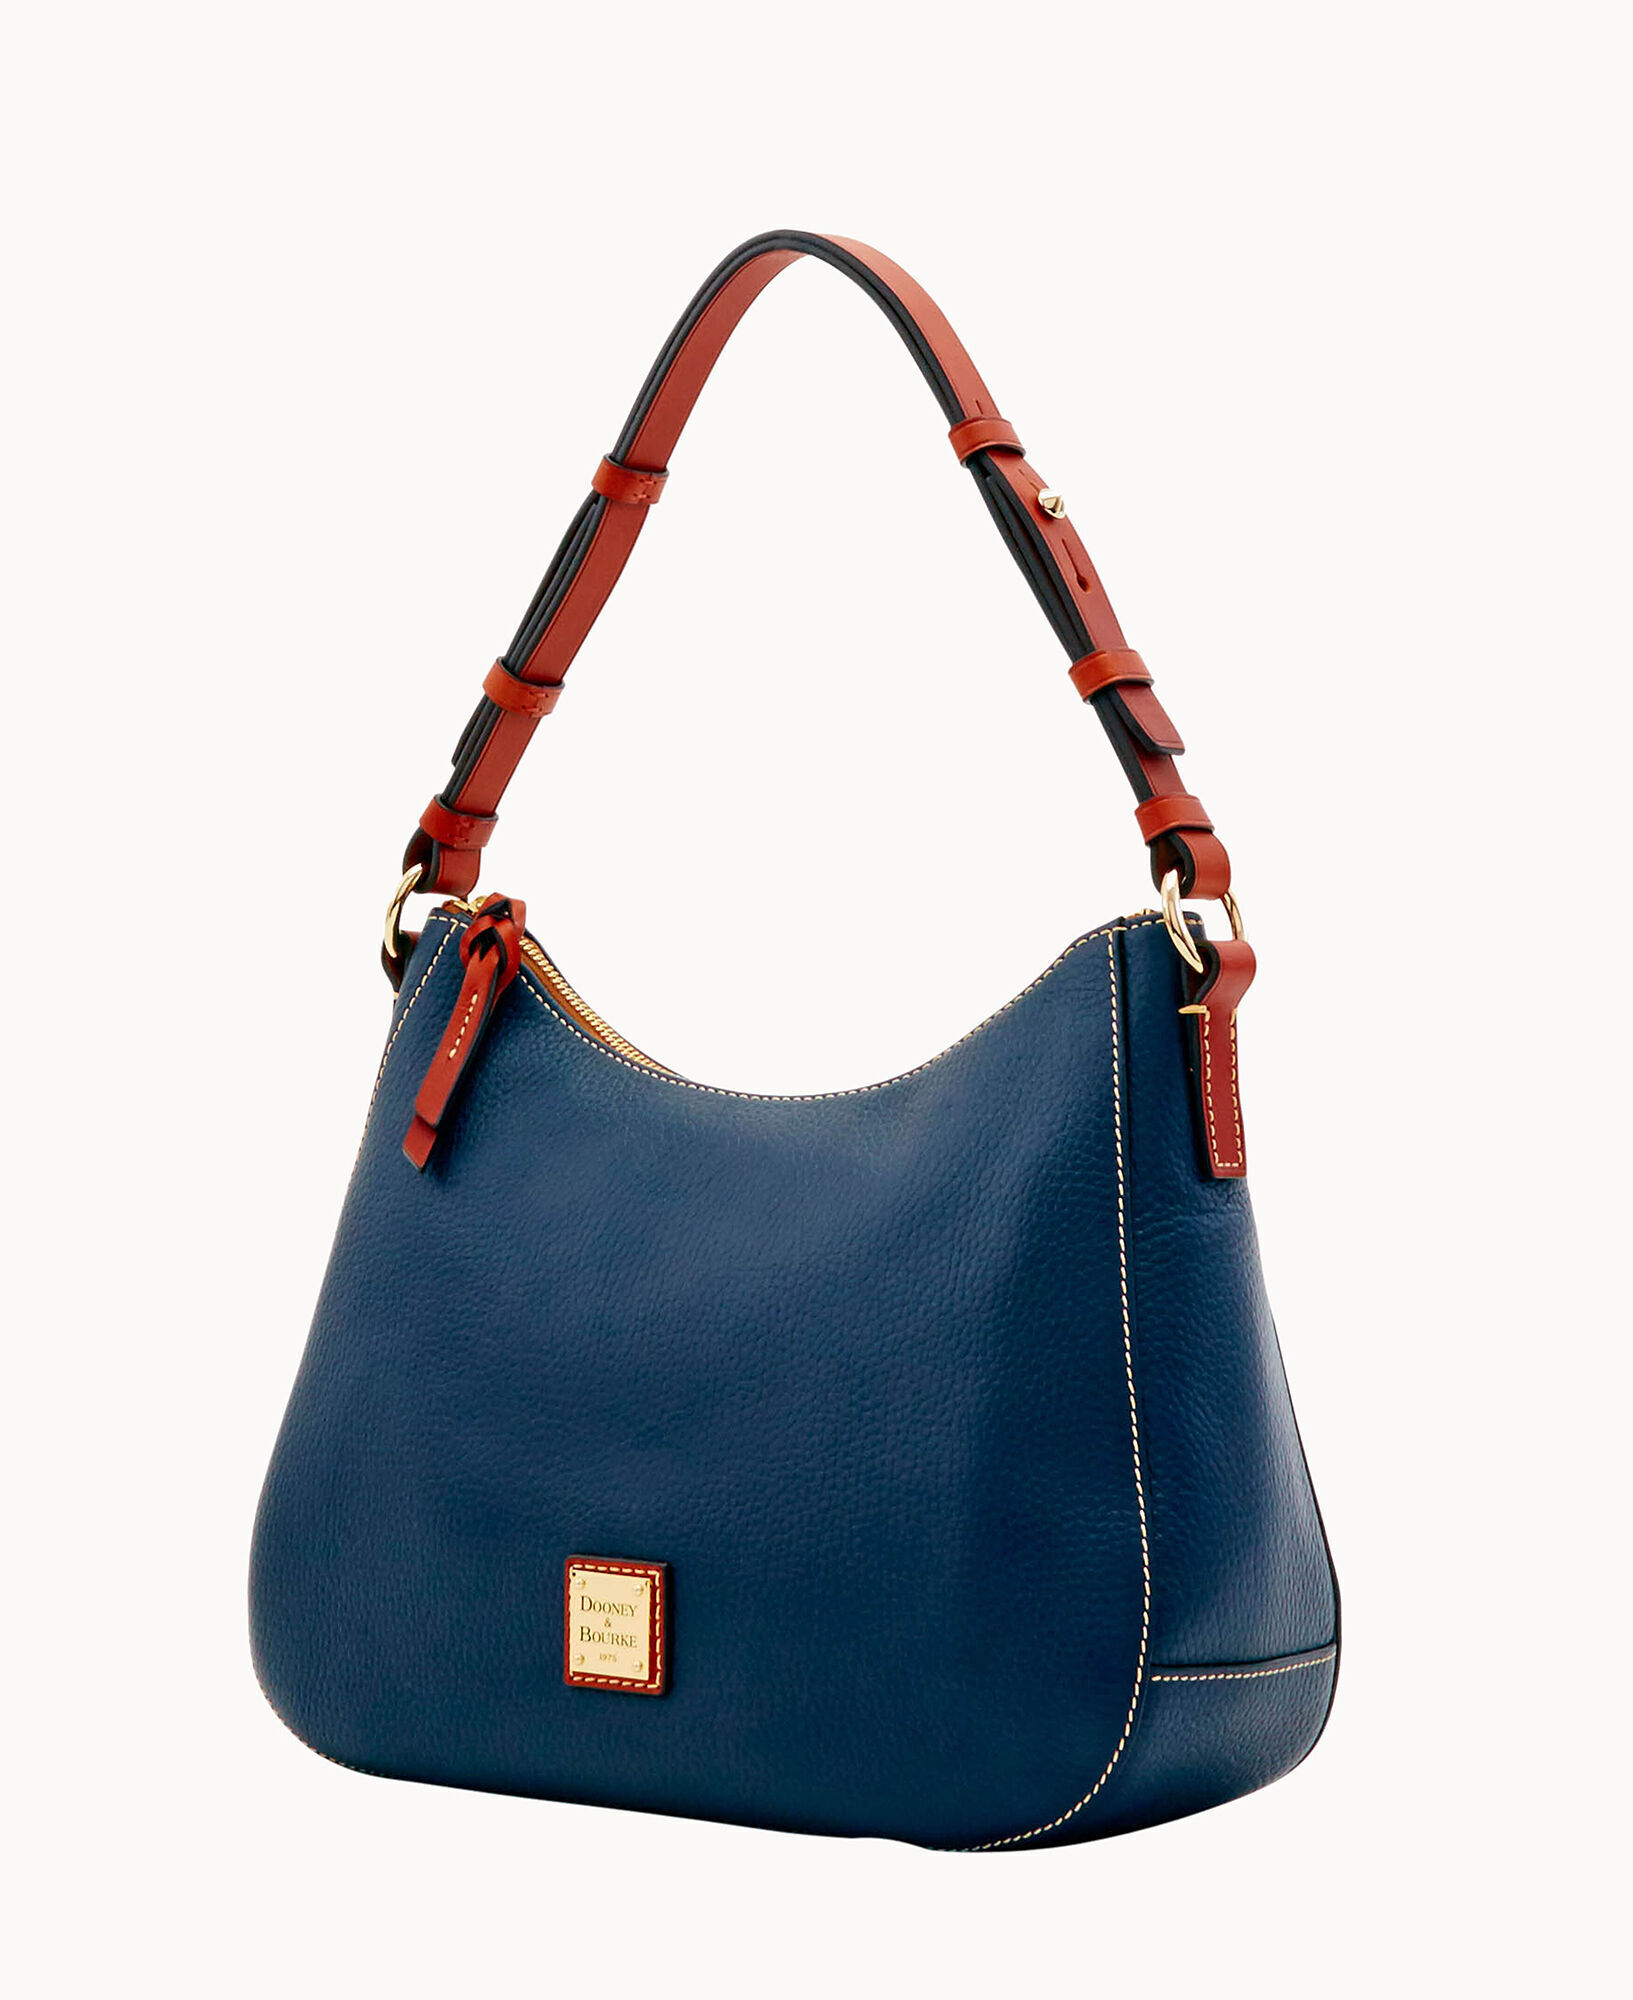 Basic Nylon Adjustable Hobo Bag LA Dodgers Coral Blue